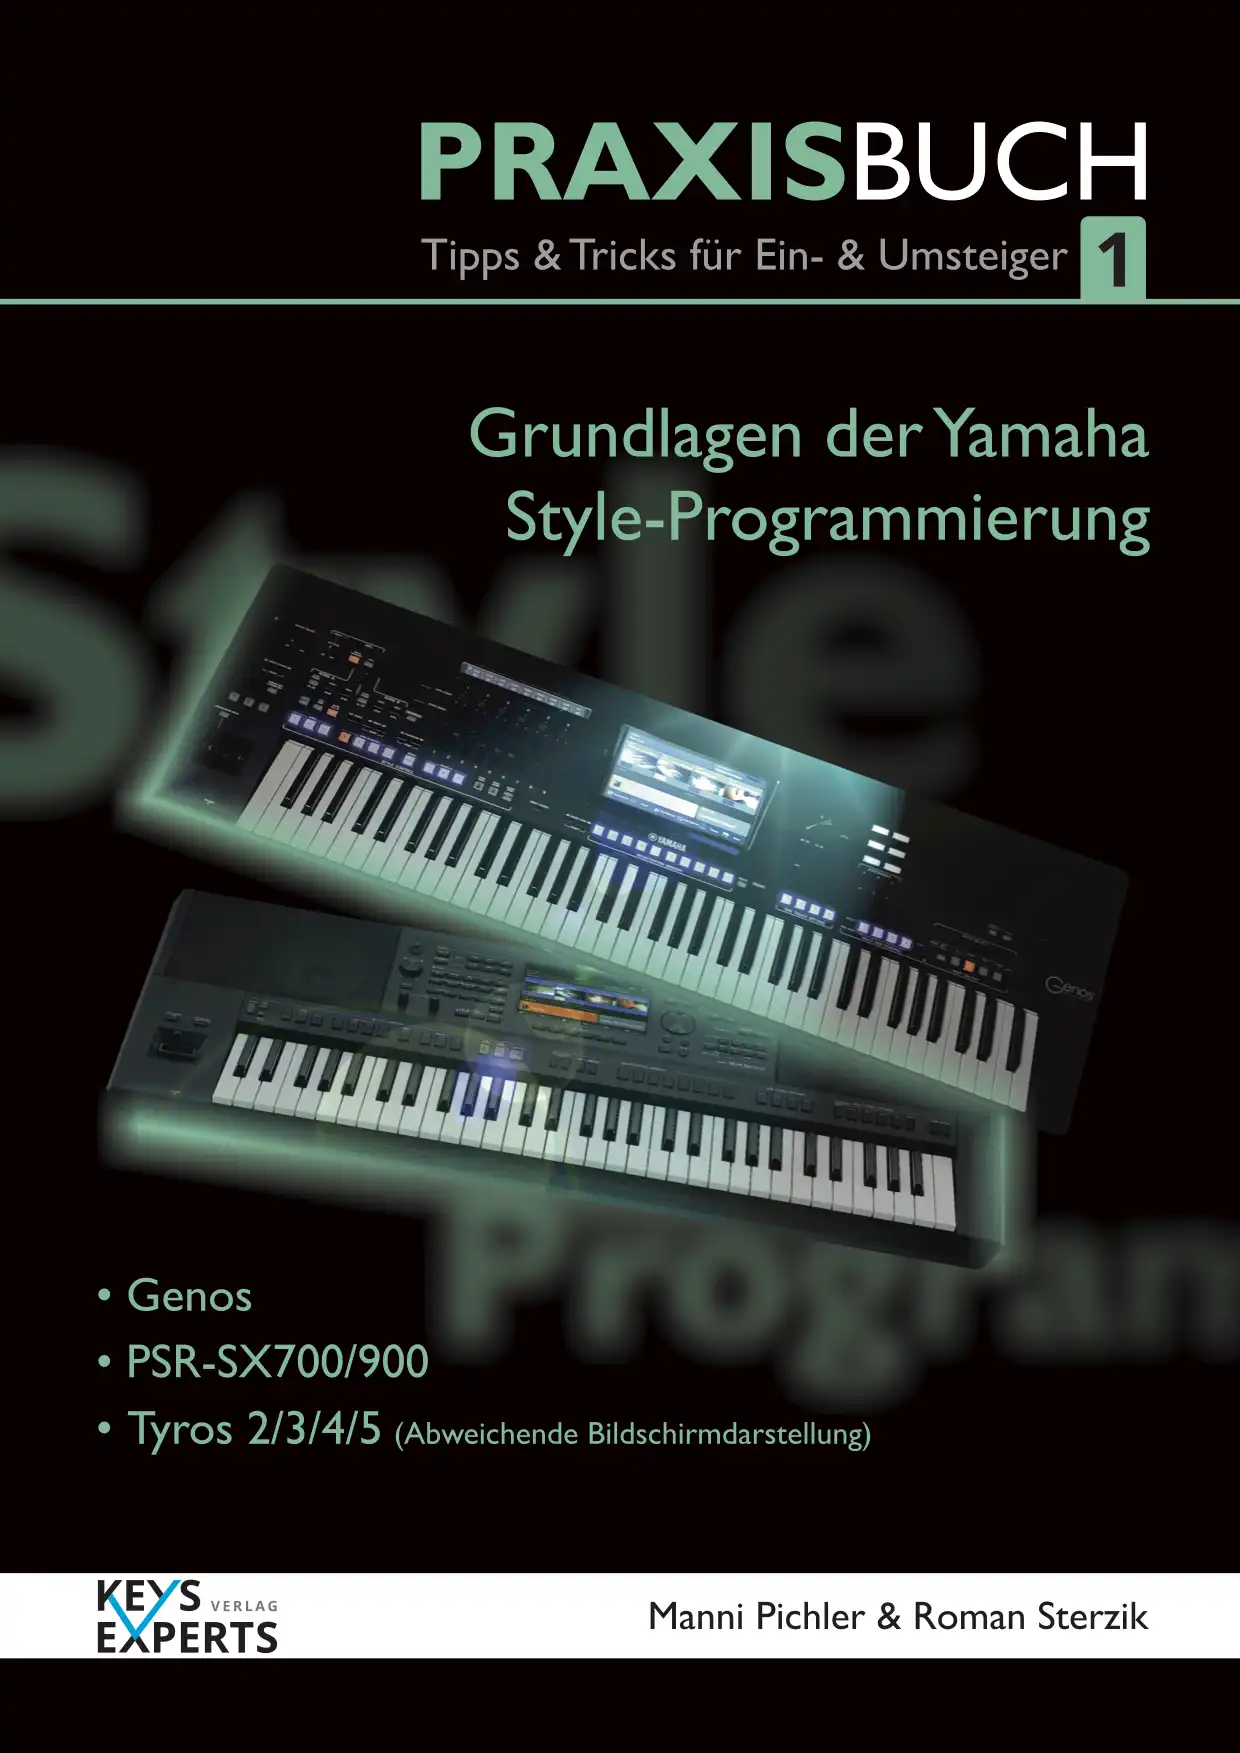 Keys Experts Grundlagen der Yamaha Style-Programmierung